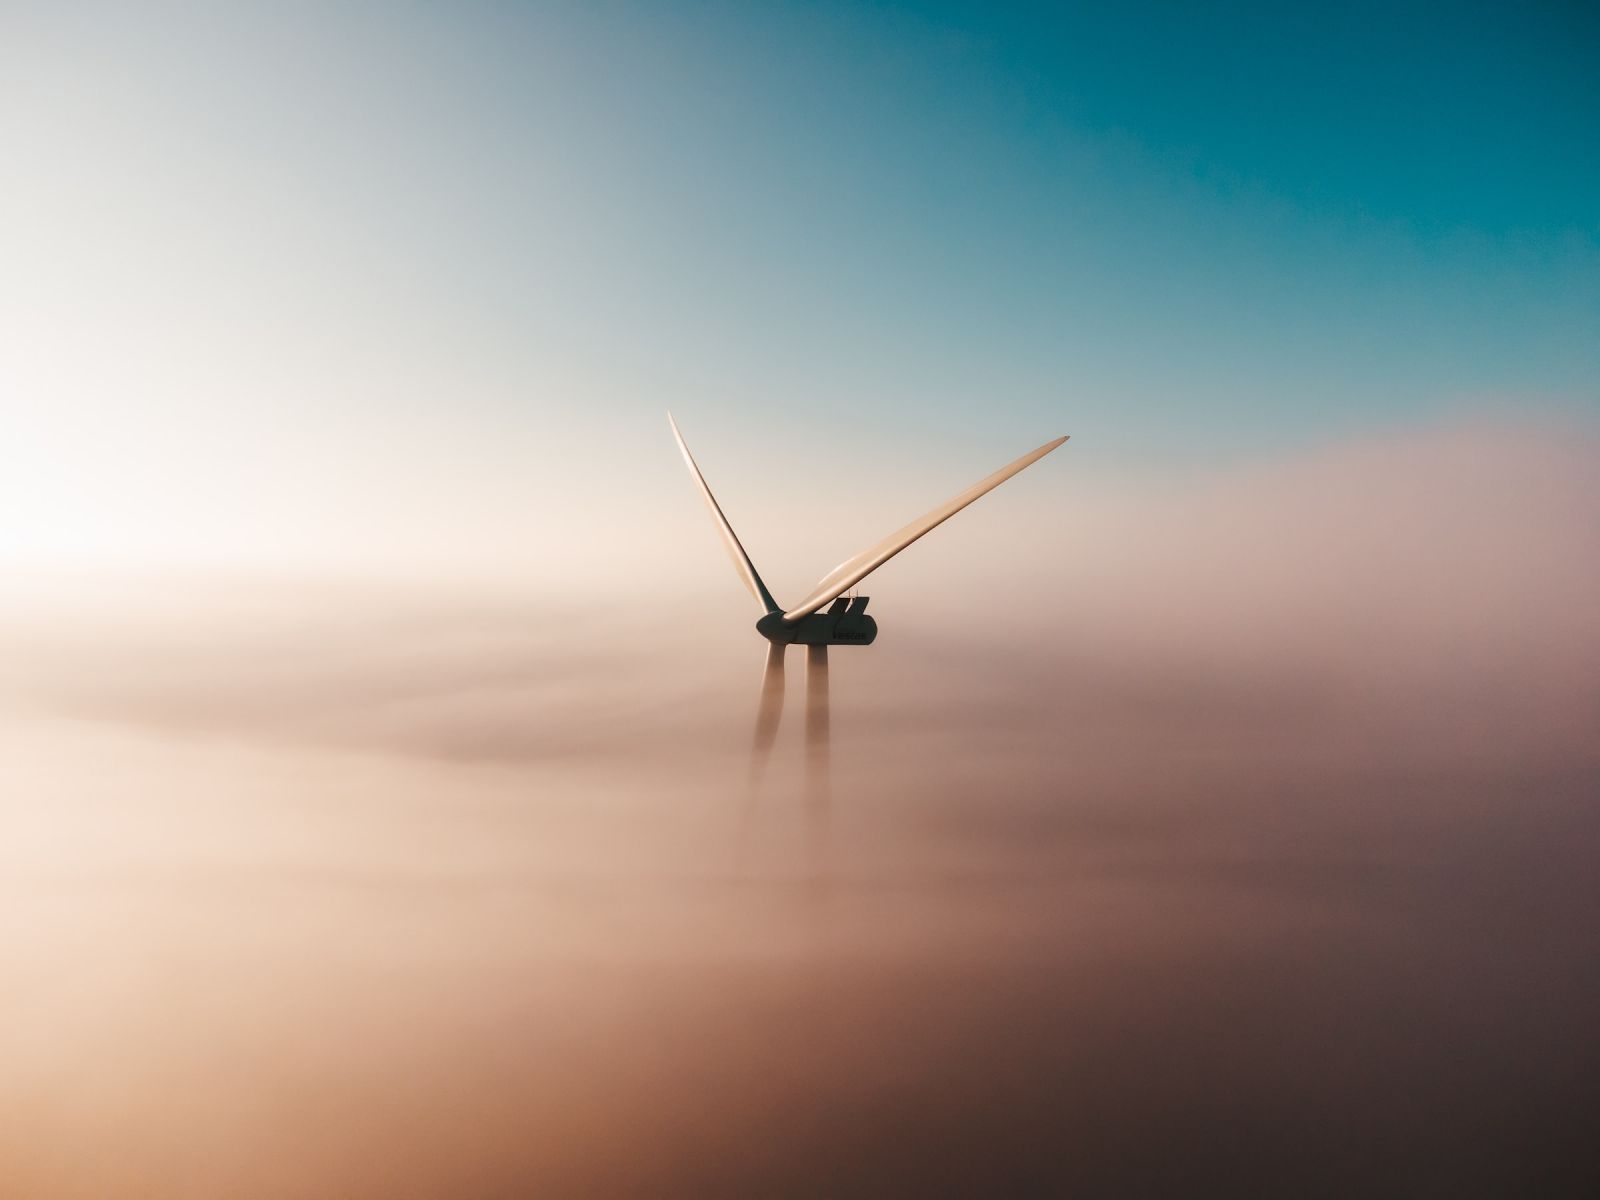 foggy turbine credit to sander weetelig on Unsplash